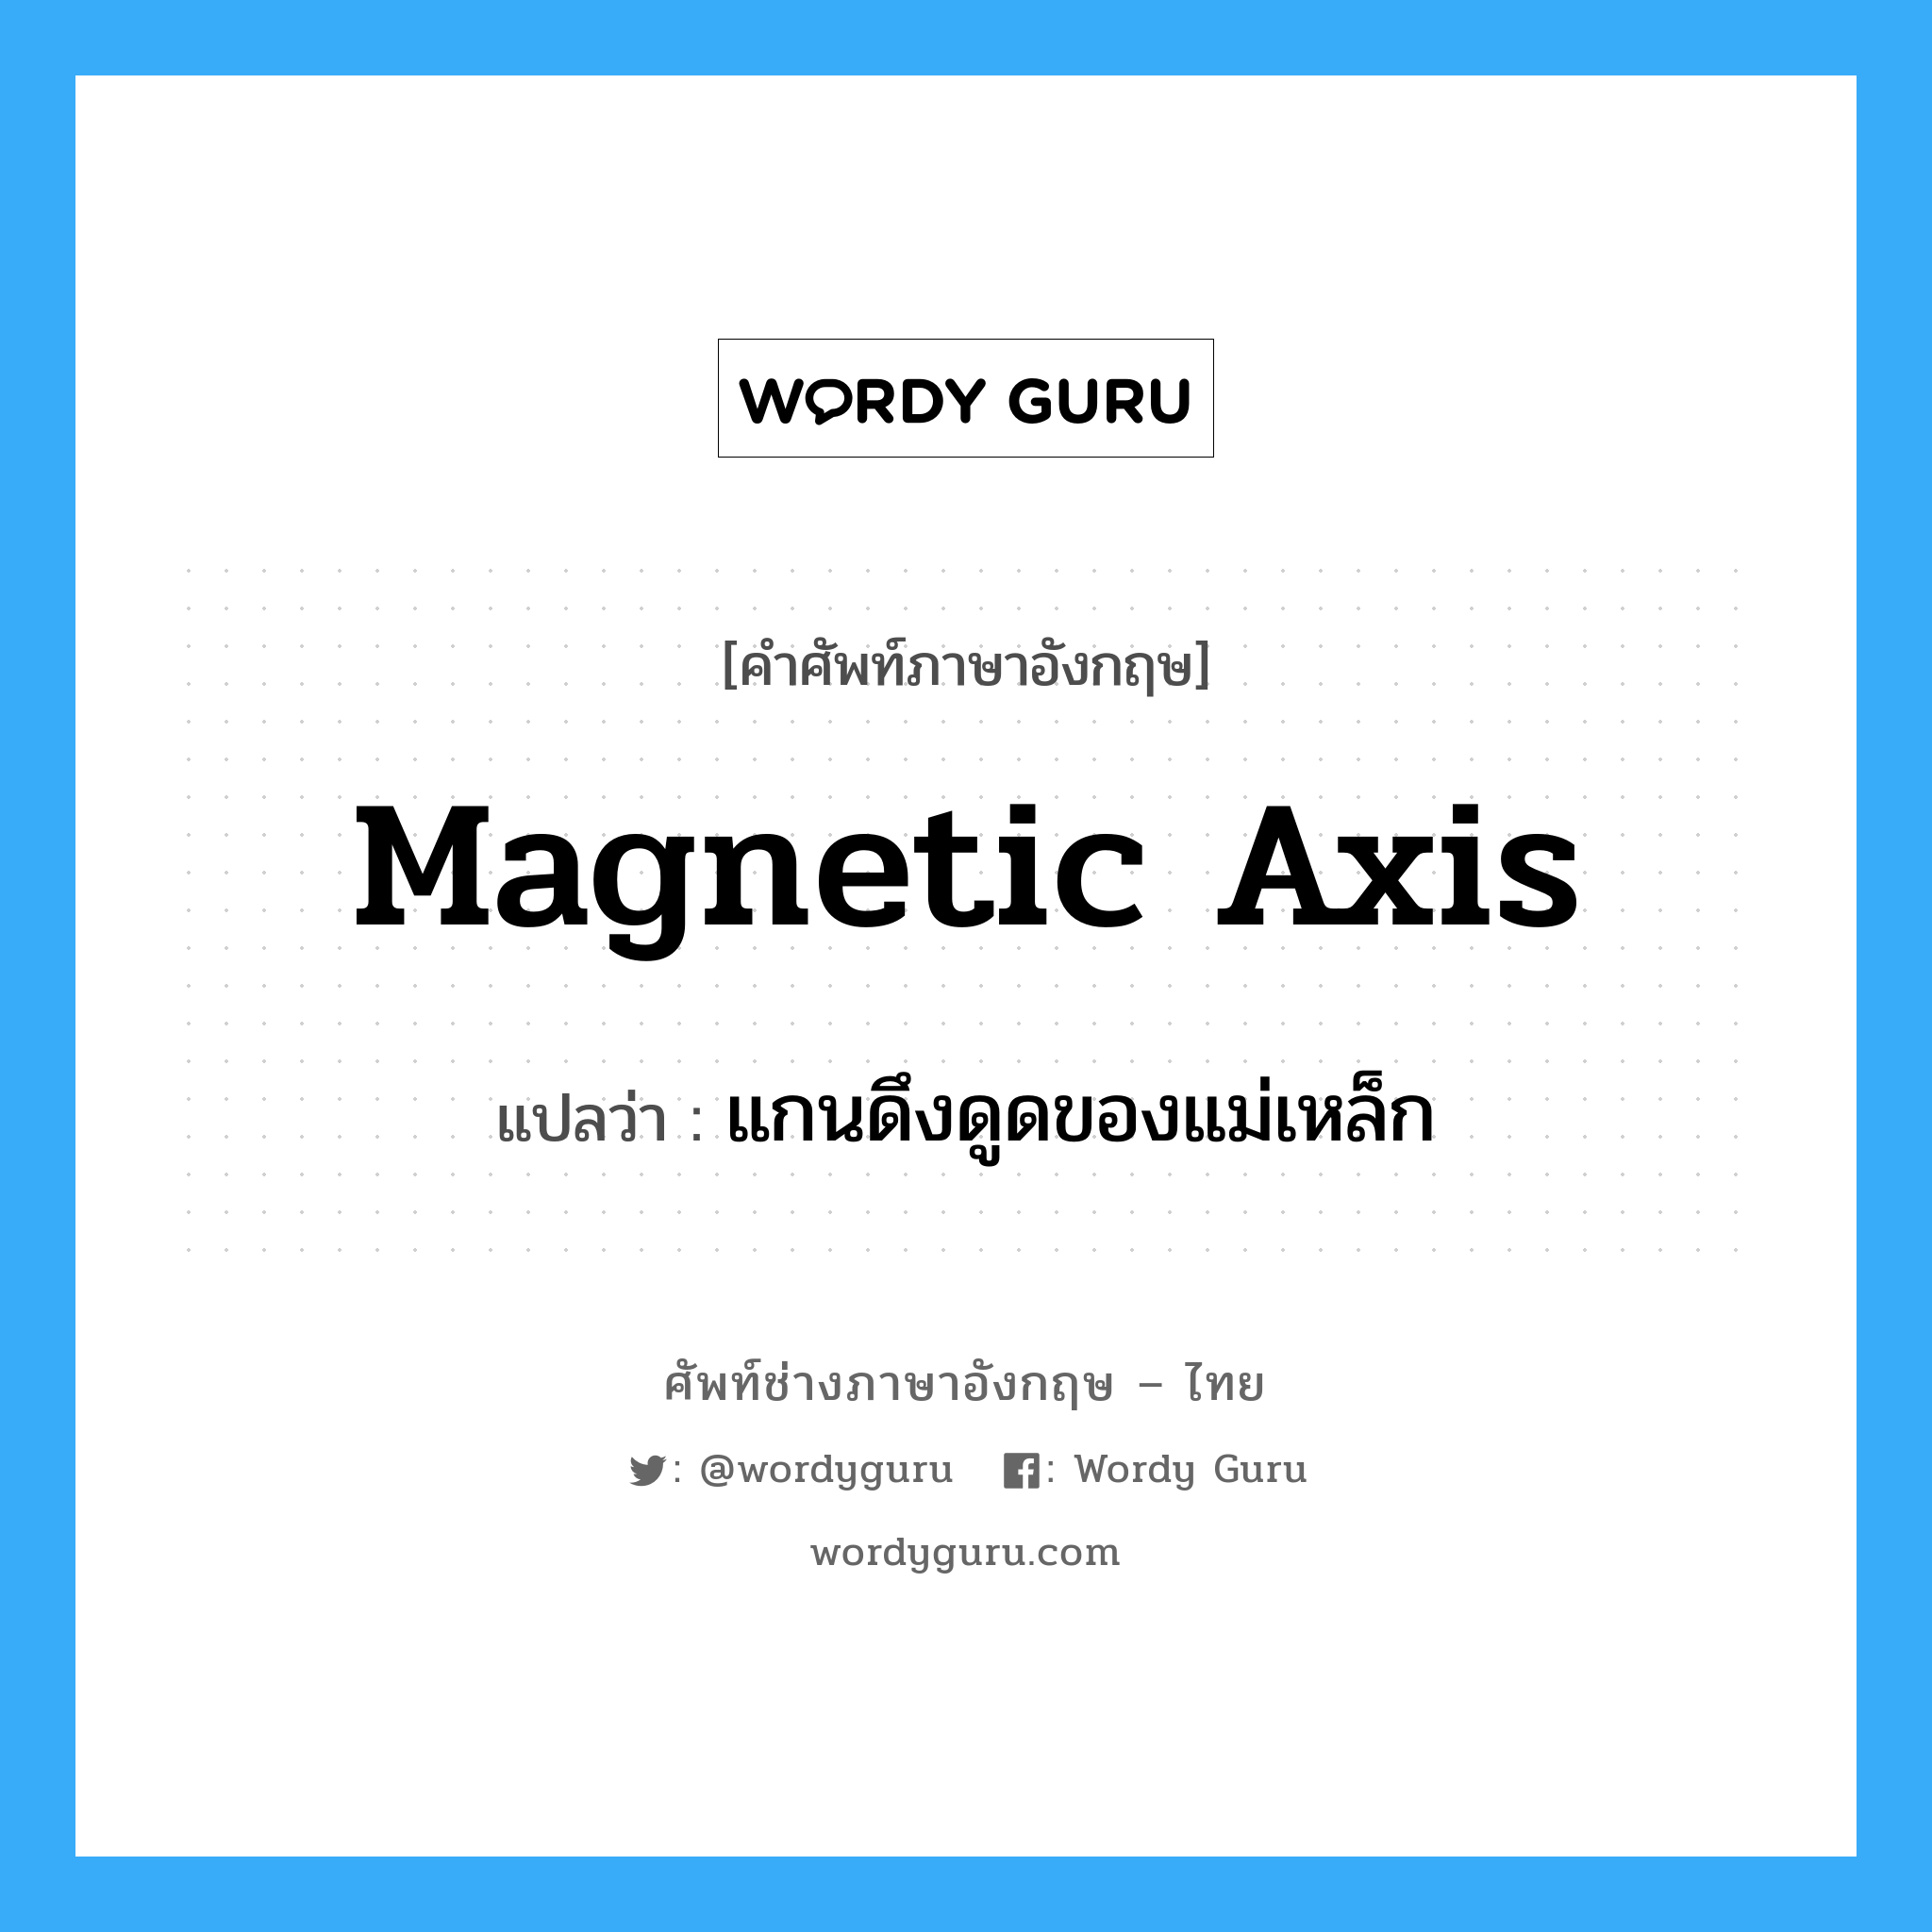 แกนดึงดูดของแม่เหล็ก ภาษาอังกฤษ?, คำศัพท์ช่างภาษาอังกฤษ - ไทย แกนดึงดูดของแม่เหล็ก คำศัพท์ภาษาอังกฤษ แกนดึงดูดของแม่เหล็ก แปลว่า magnetic axis